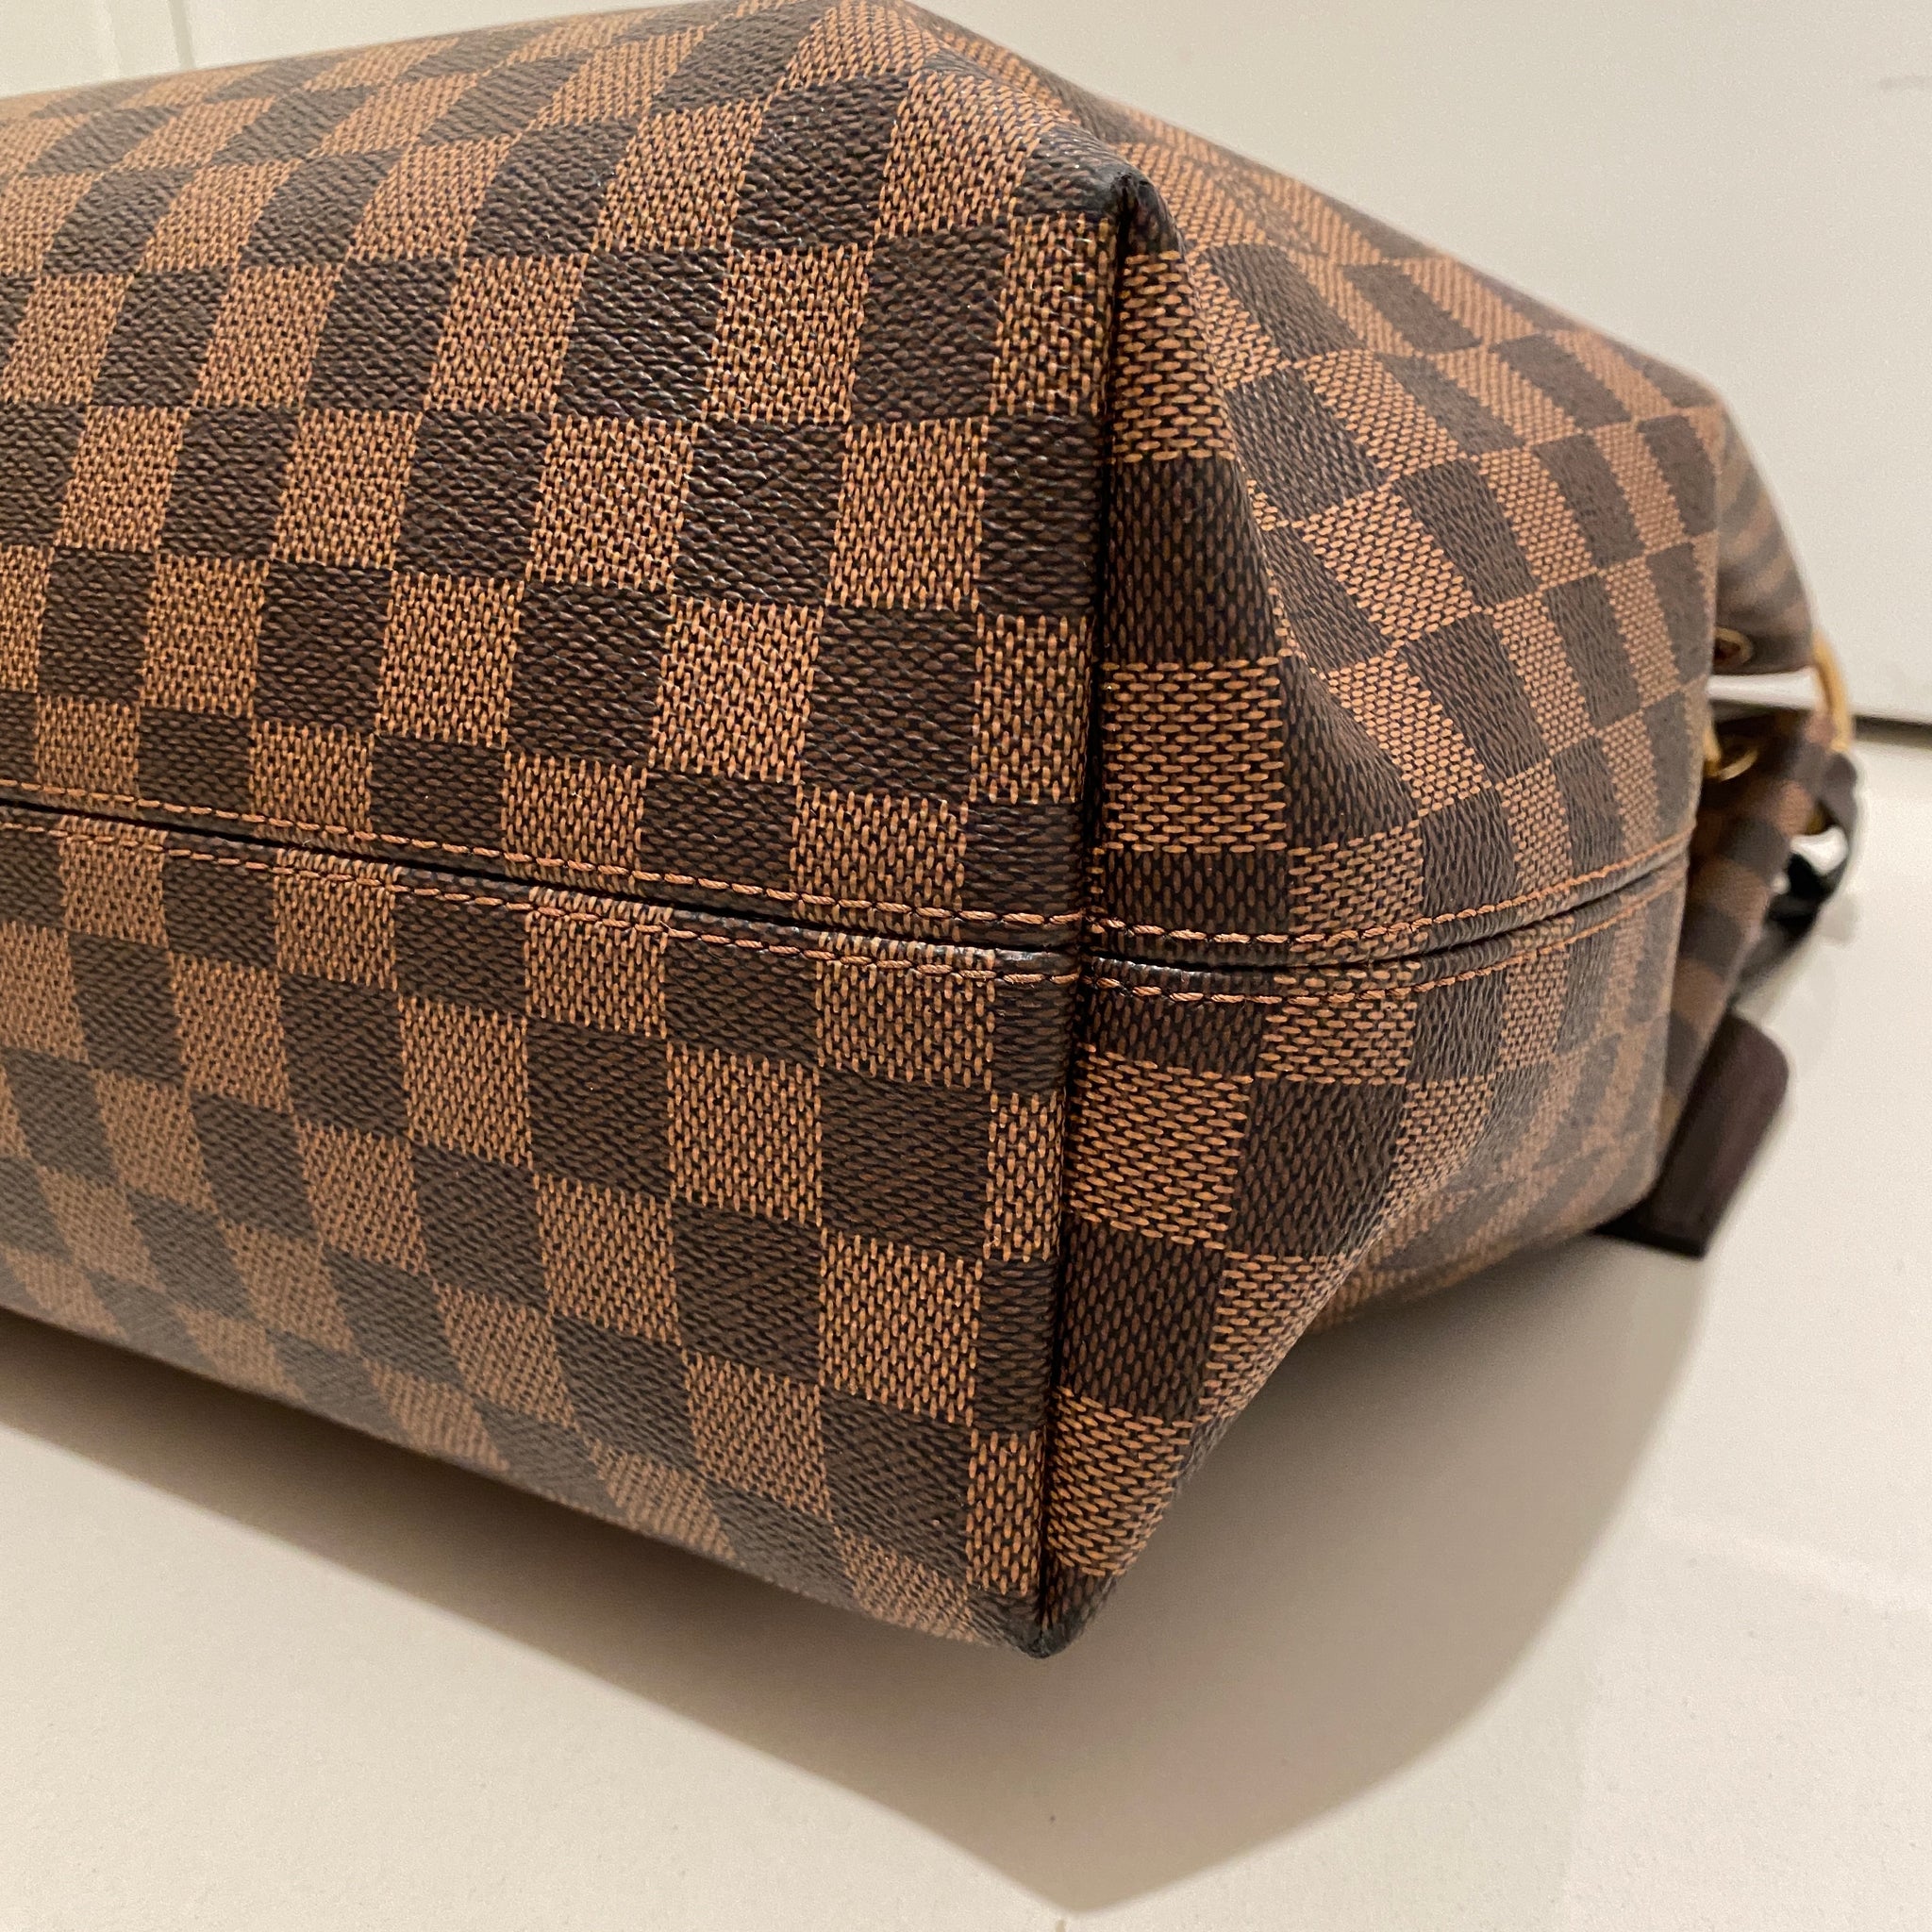 Louis Vuitton Damier Ebene Graceful MM N44045 is great for all travels.  #LouisVuittonBag #LVBagsCheap #…